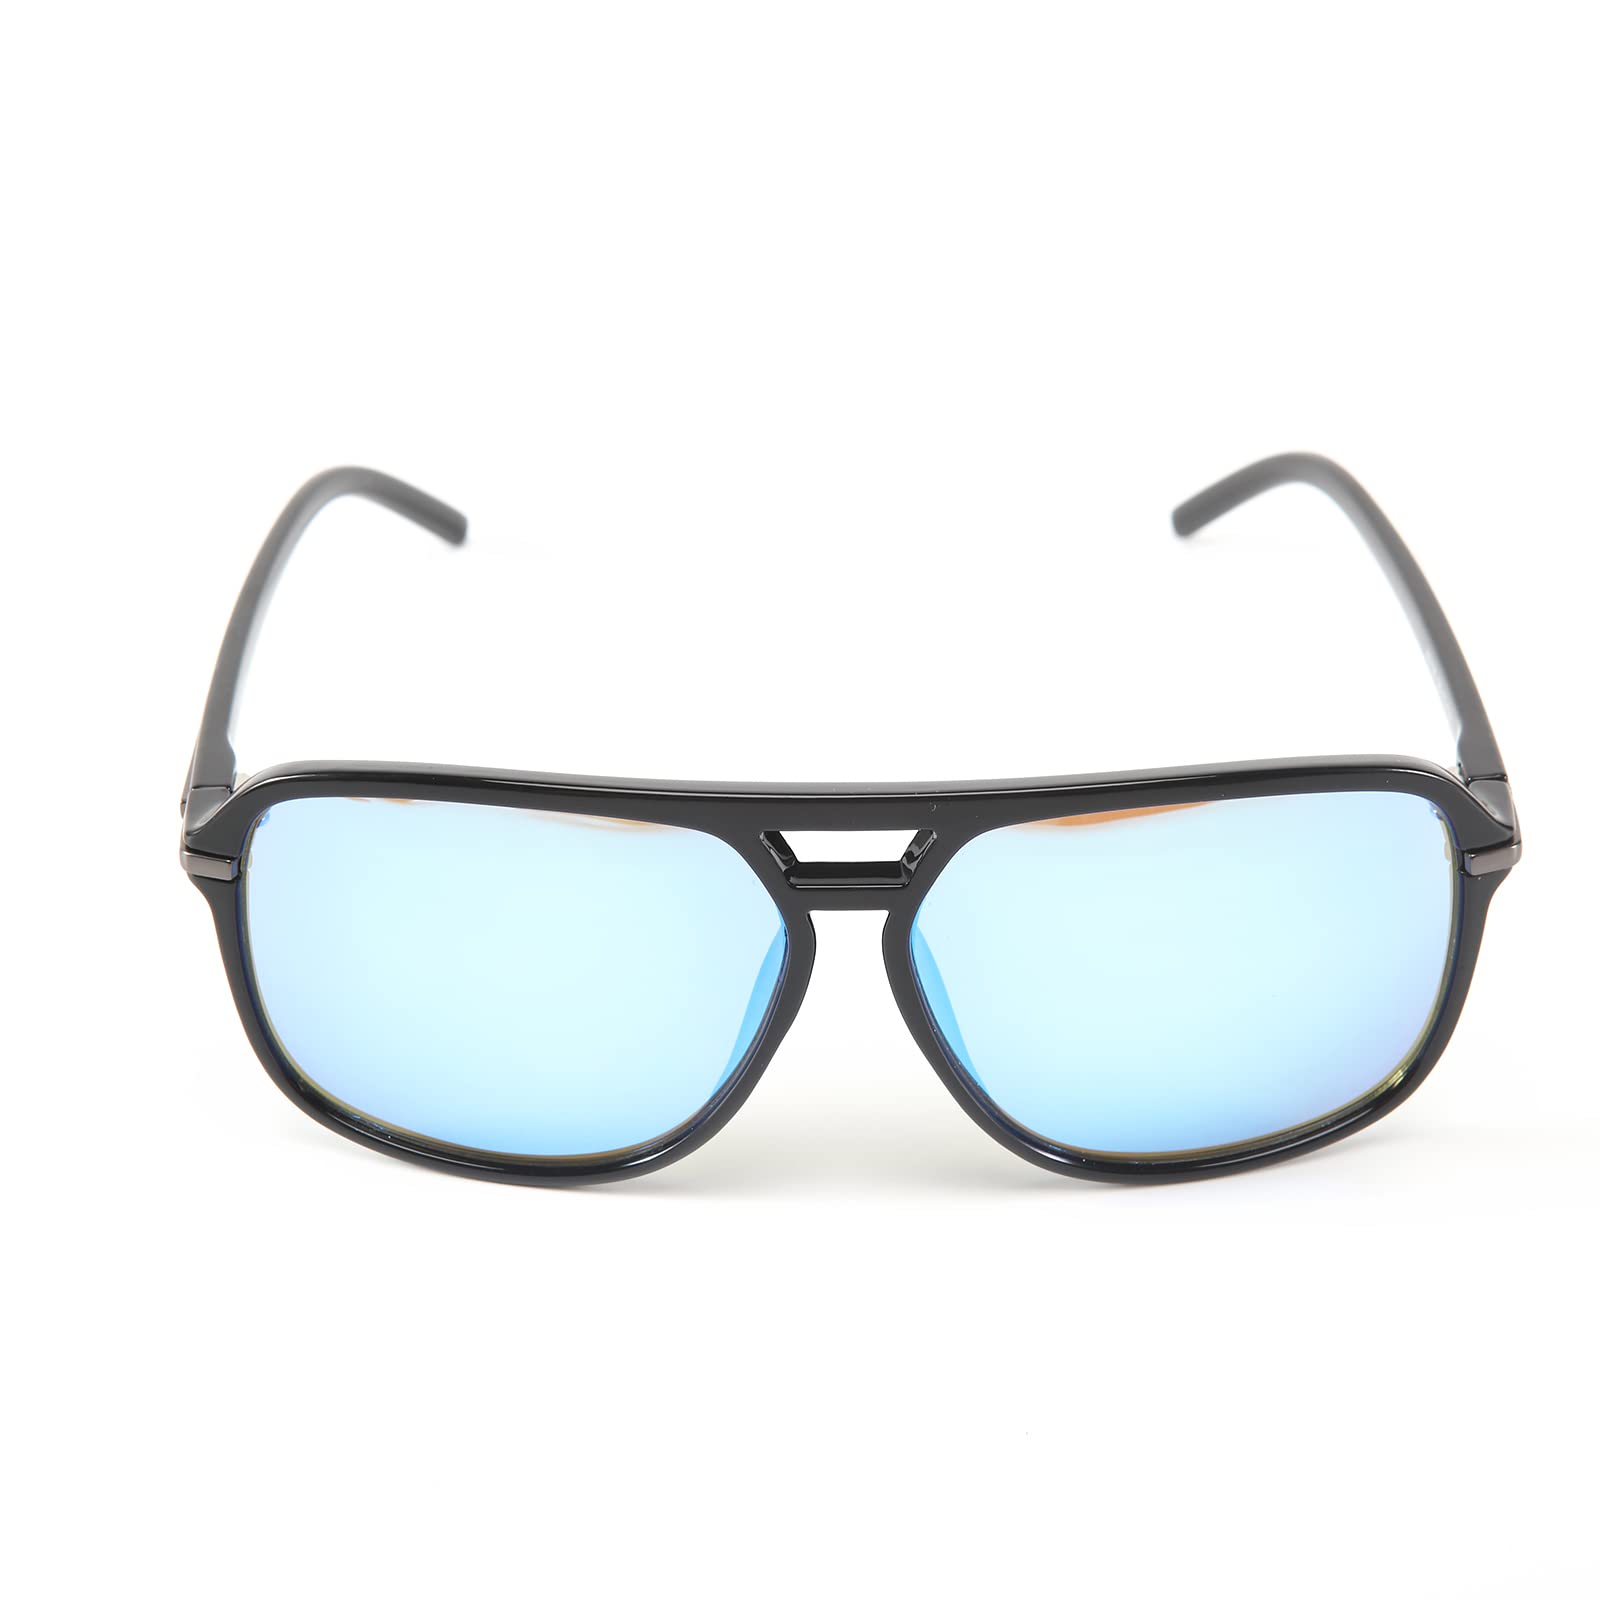 Intellilens Pilot UV Protection Sunglasses For Men & Women